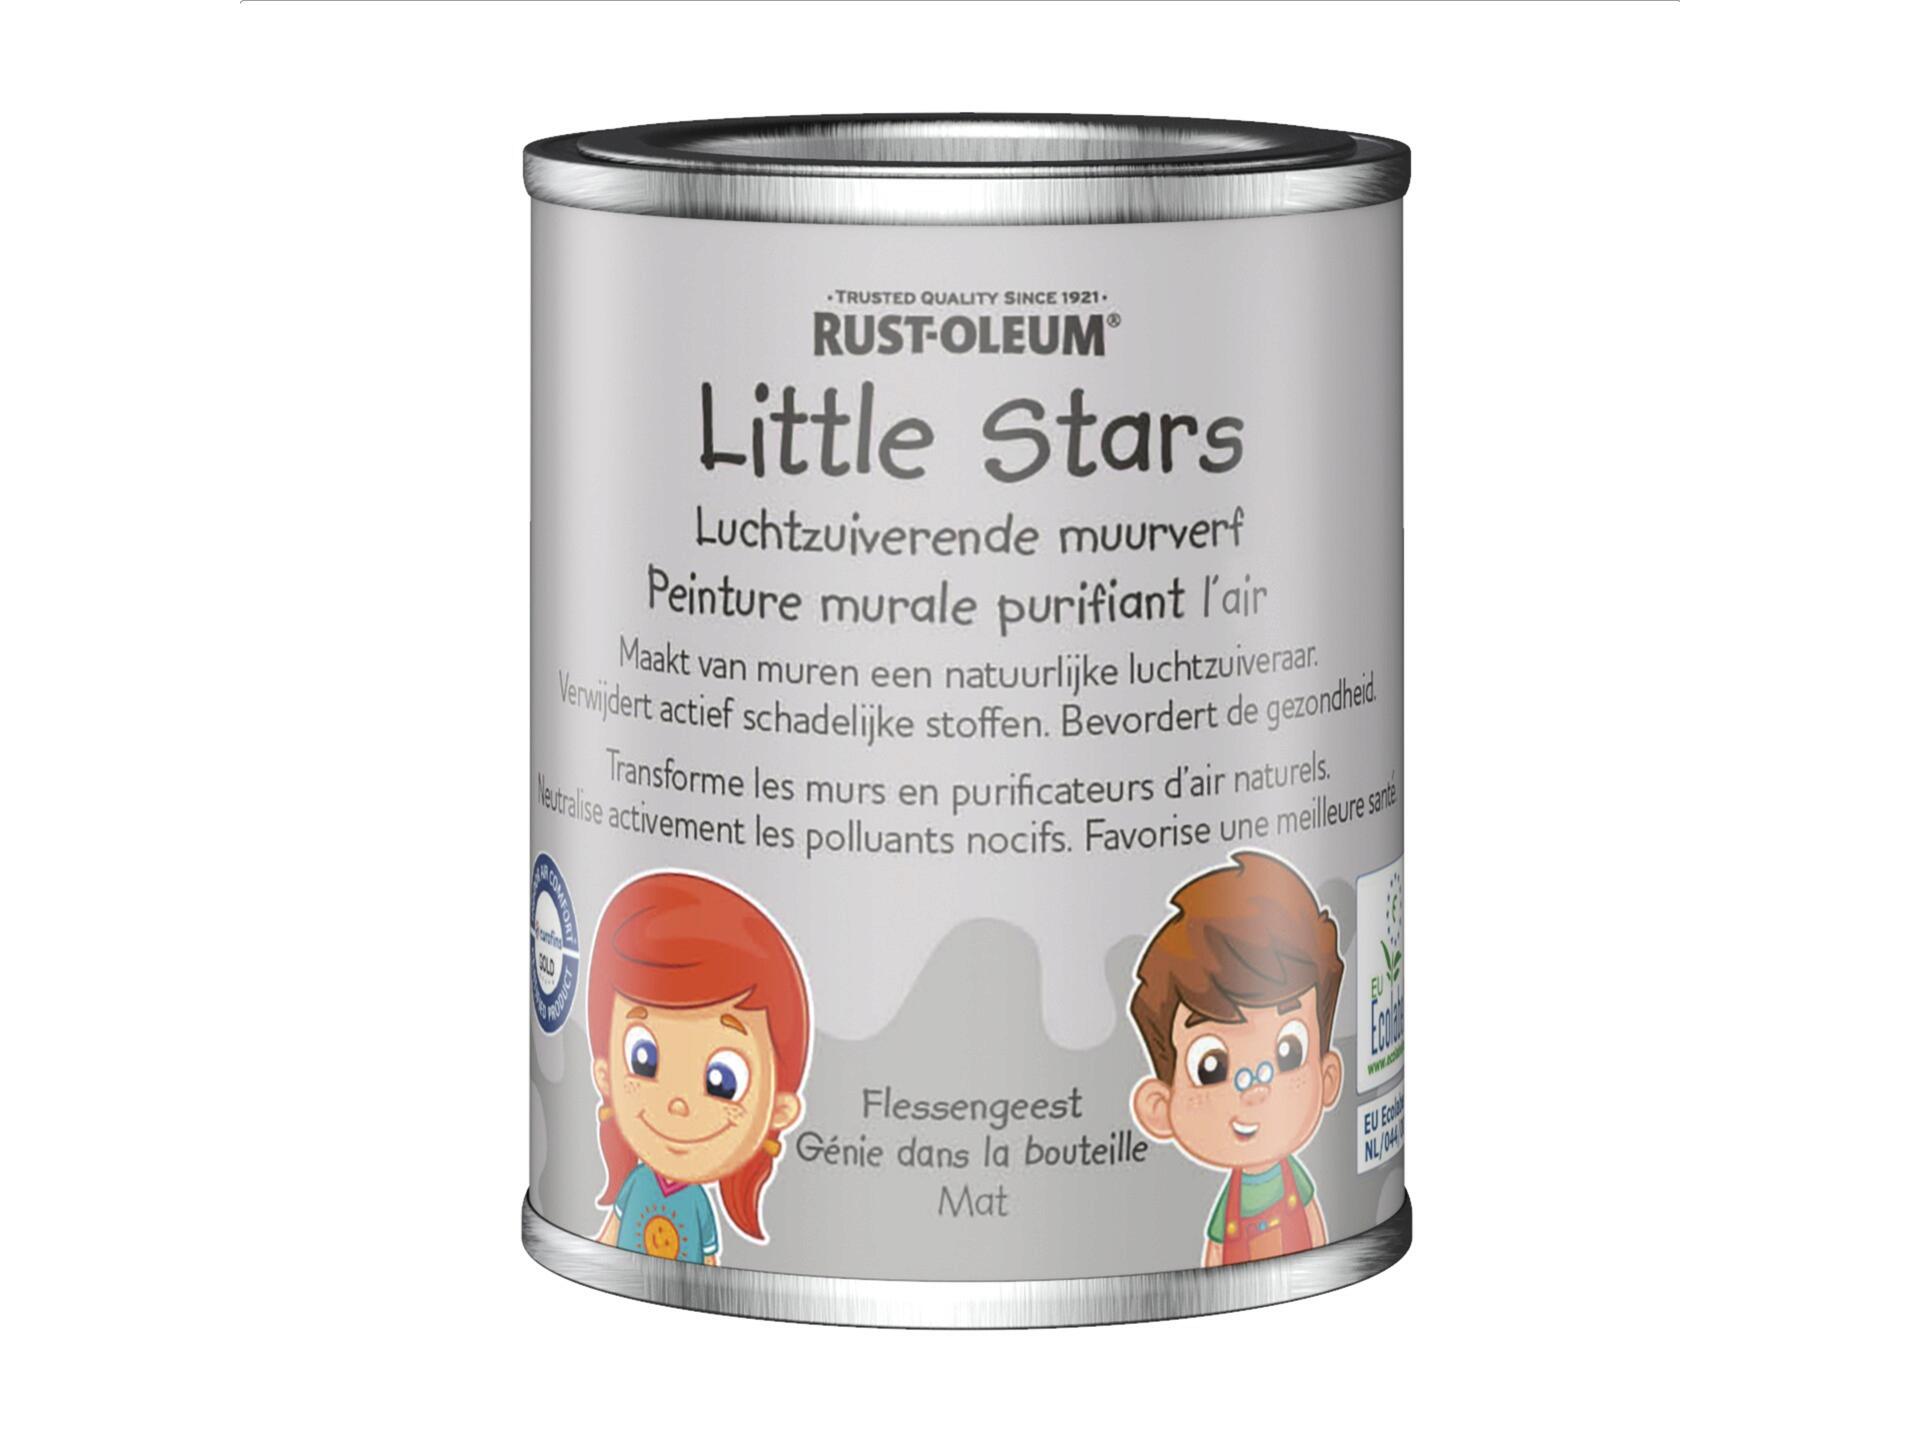 Rust-oleum Little Stars luchtzuiverende muurverf 125ml flessengeest